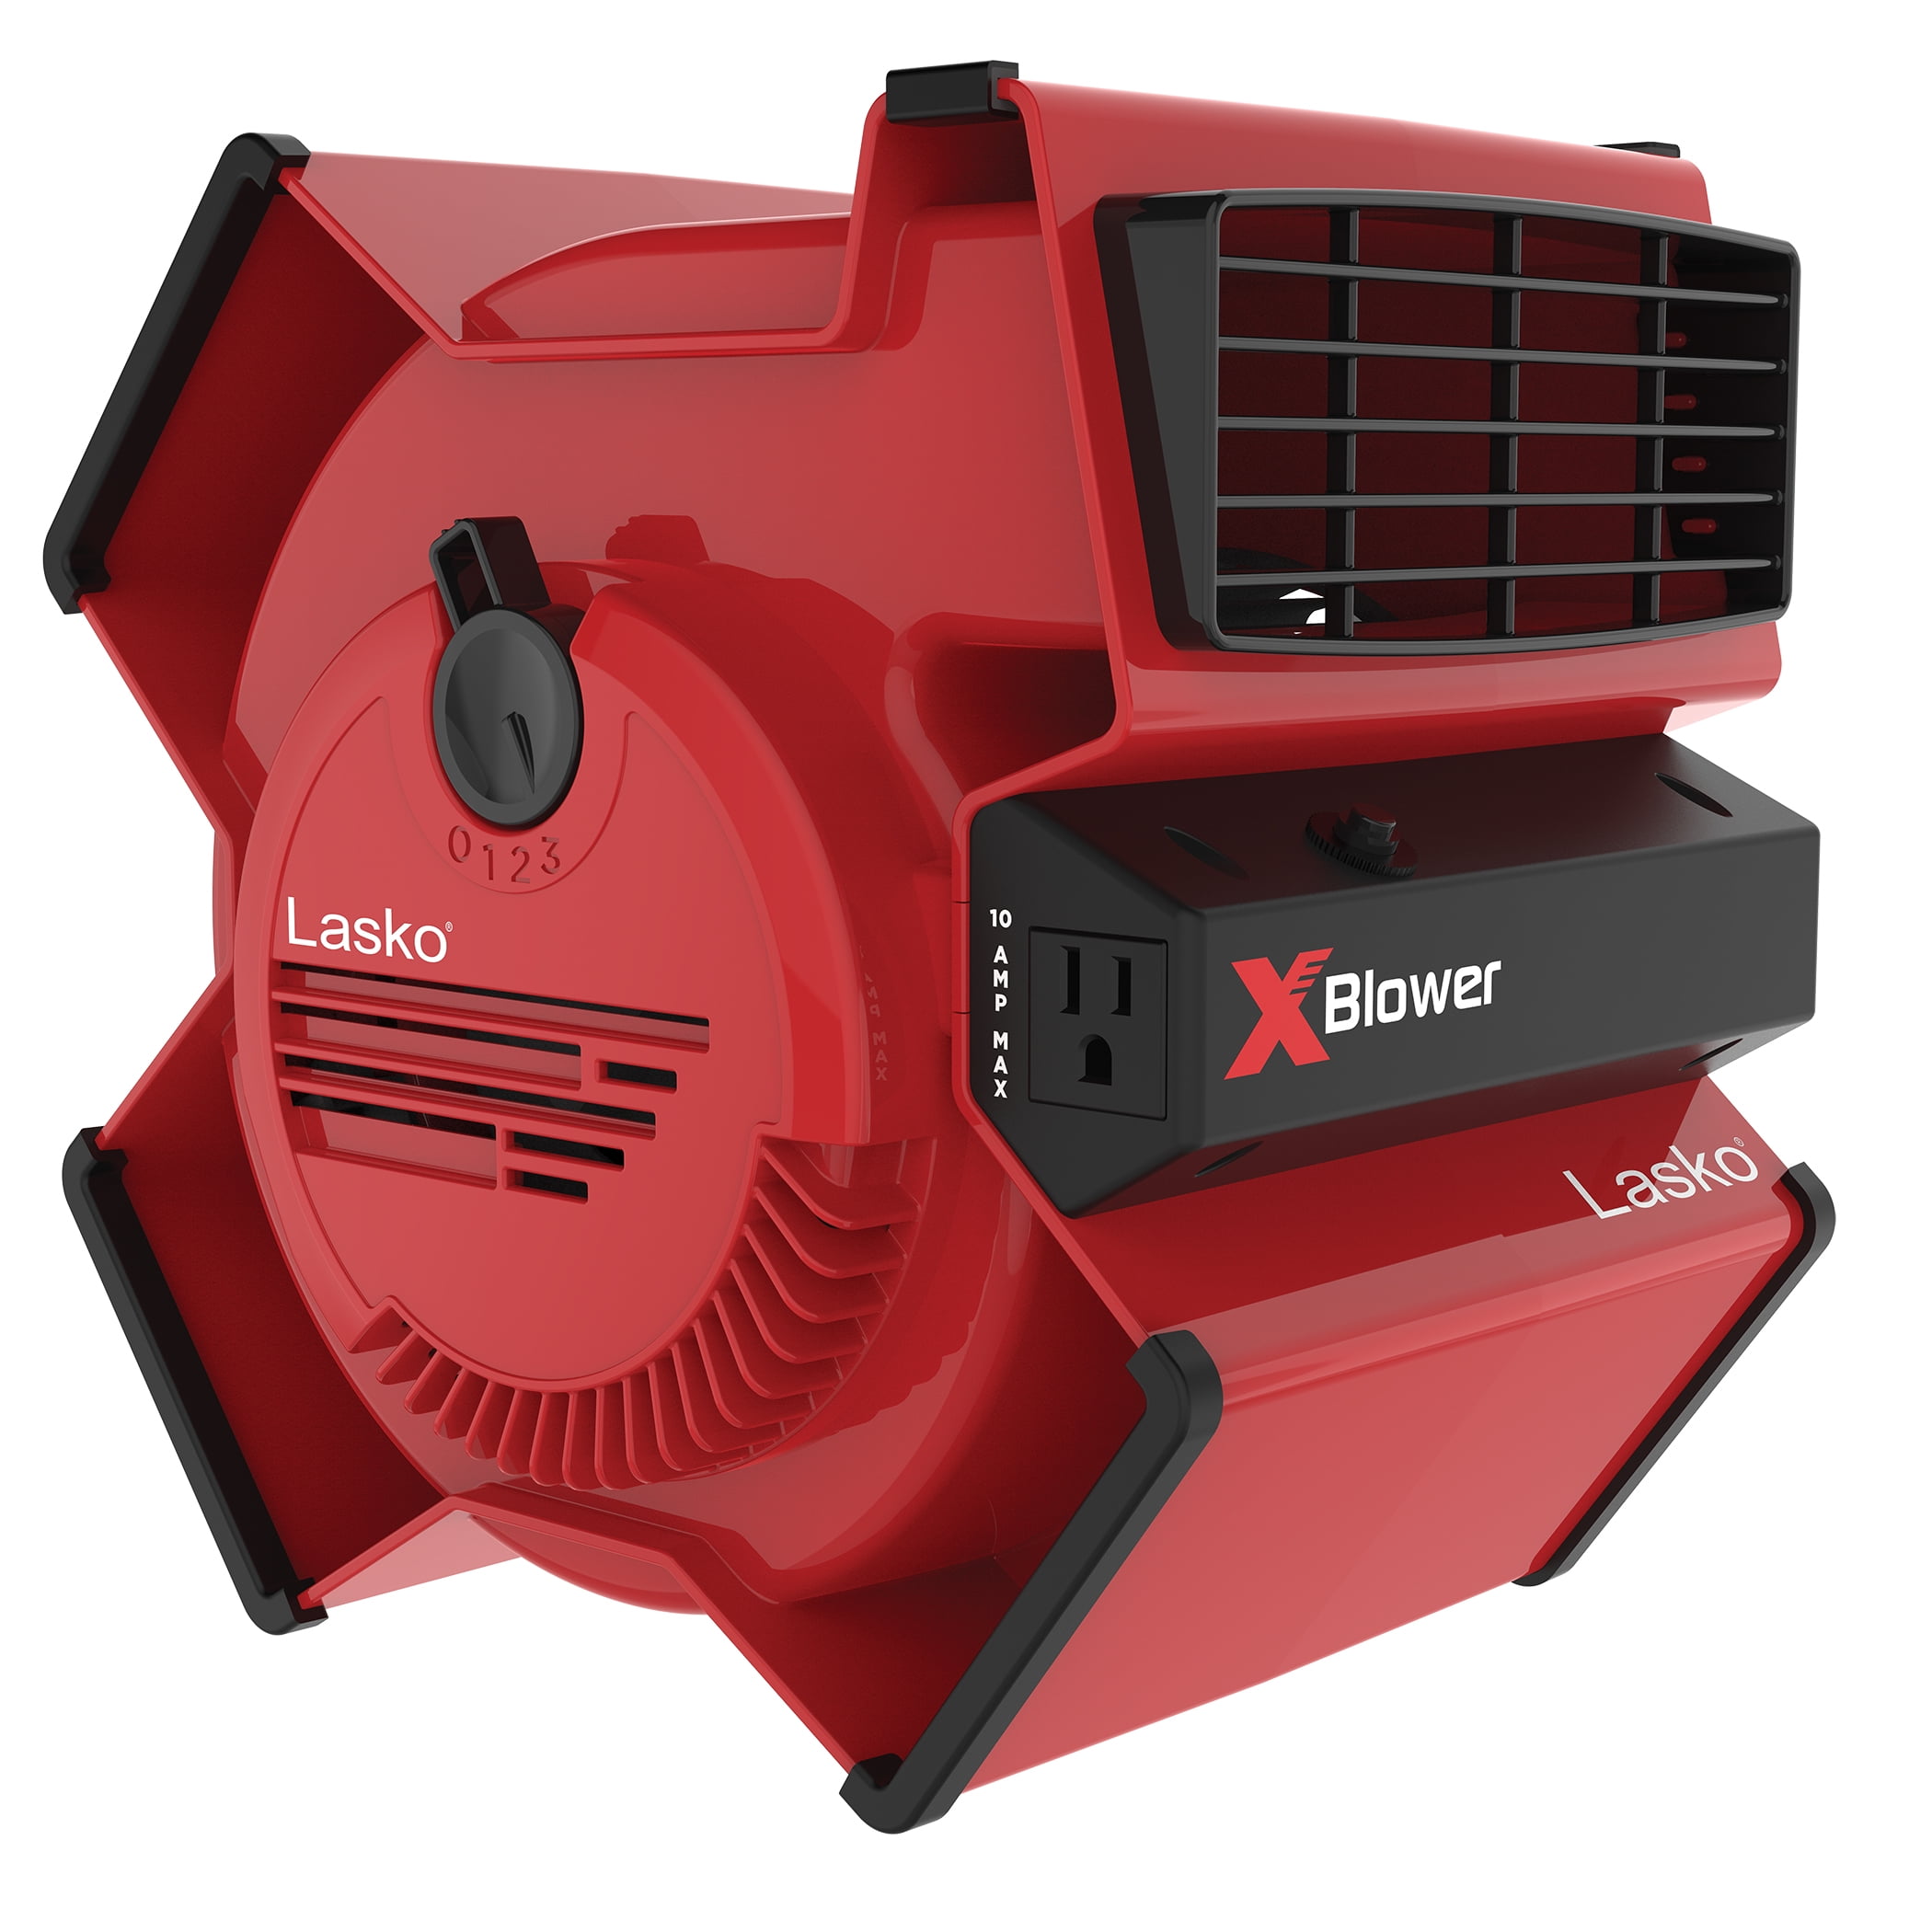 suffix ortodoks Perioperativ periode Lasko X-Blower Multi-Position Utility Blower Fan with USB Port, X12900, Red  - Walmart.com